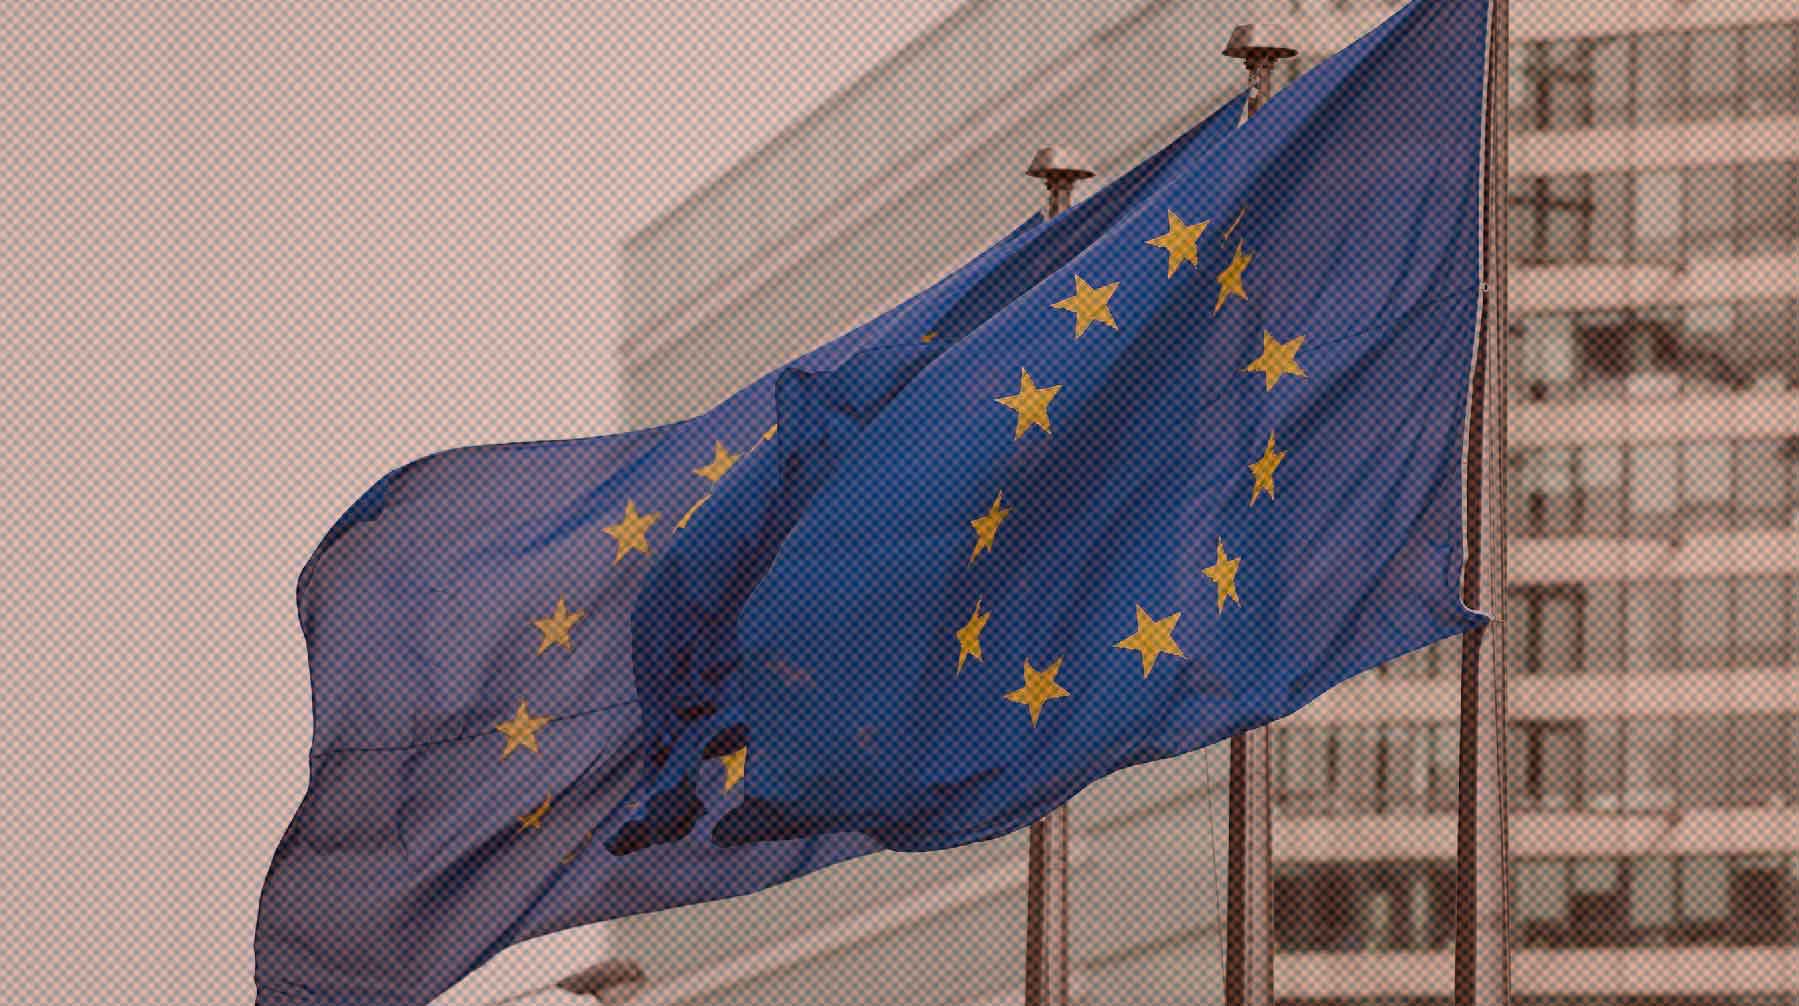 Dailystorm - Еврокомиссар МакГиннесс анонсировала новый санкционный удар ЕС по России